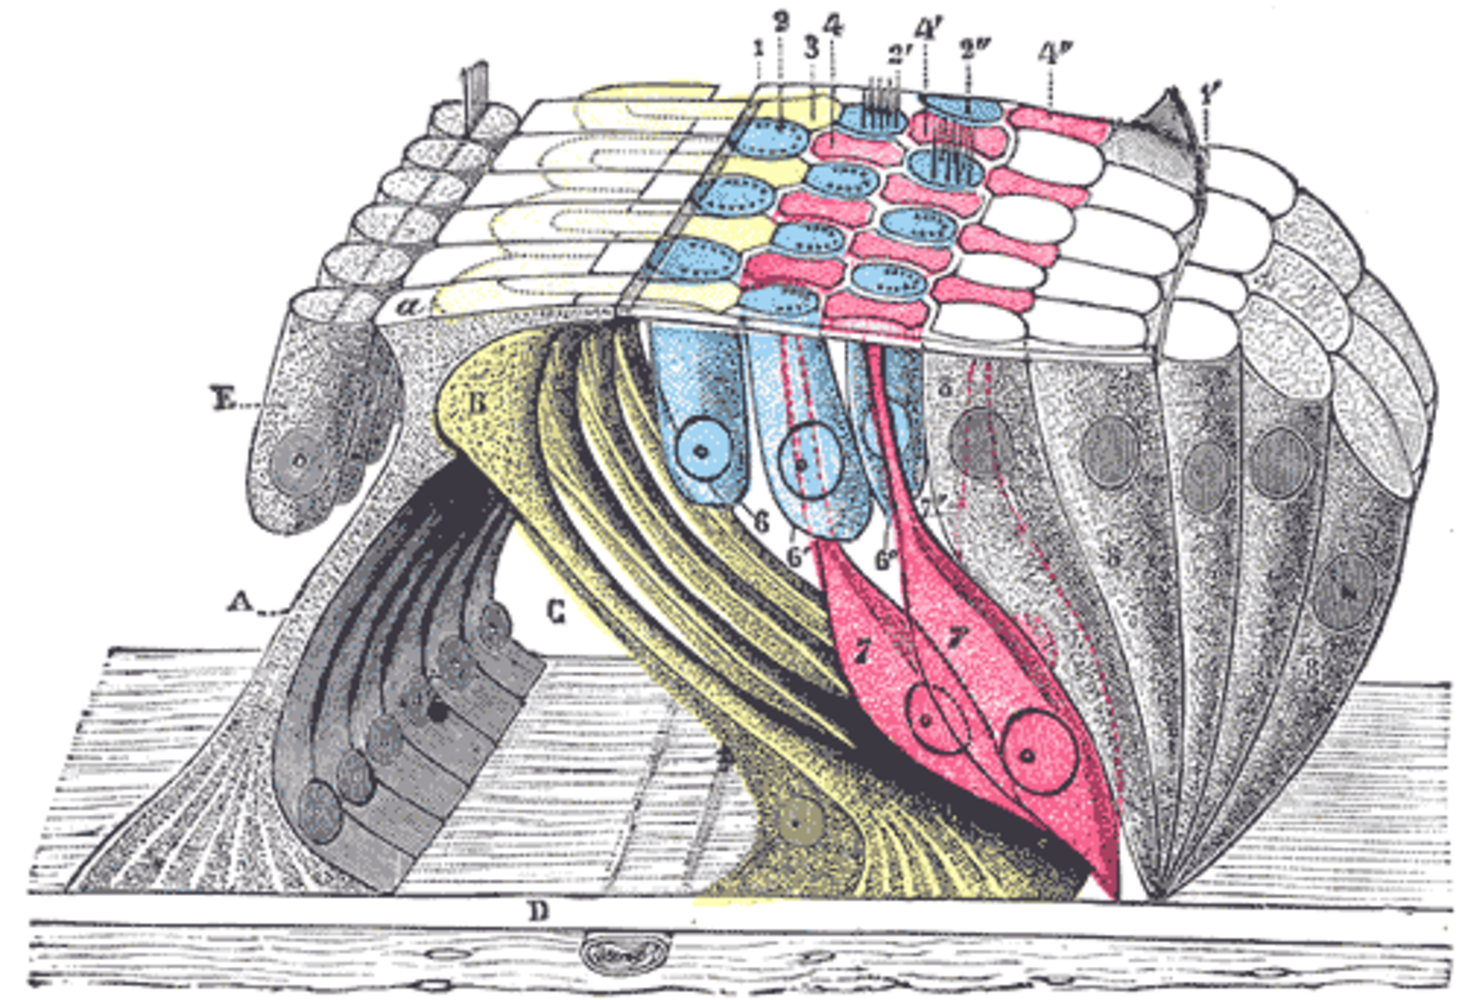 The organ of Corti (or spiral organ)